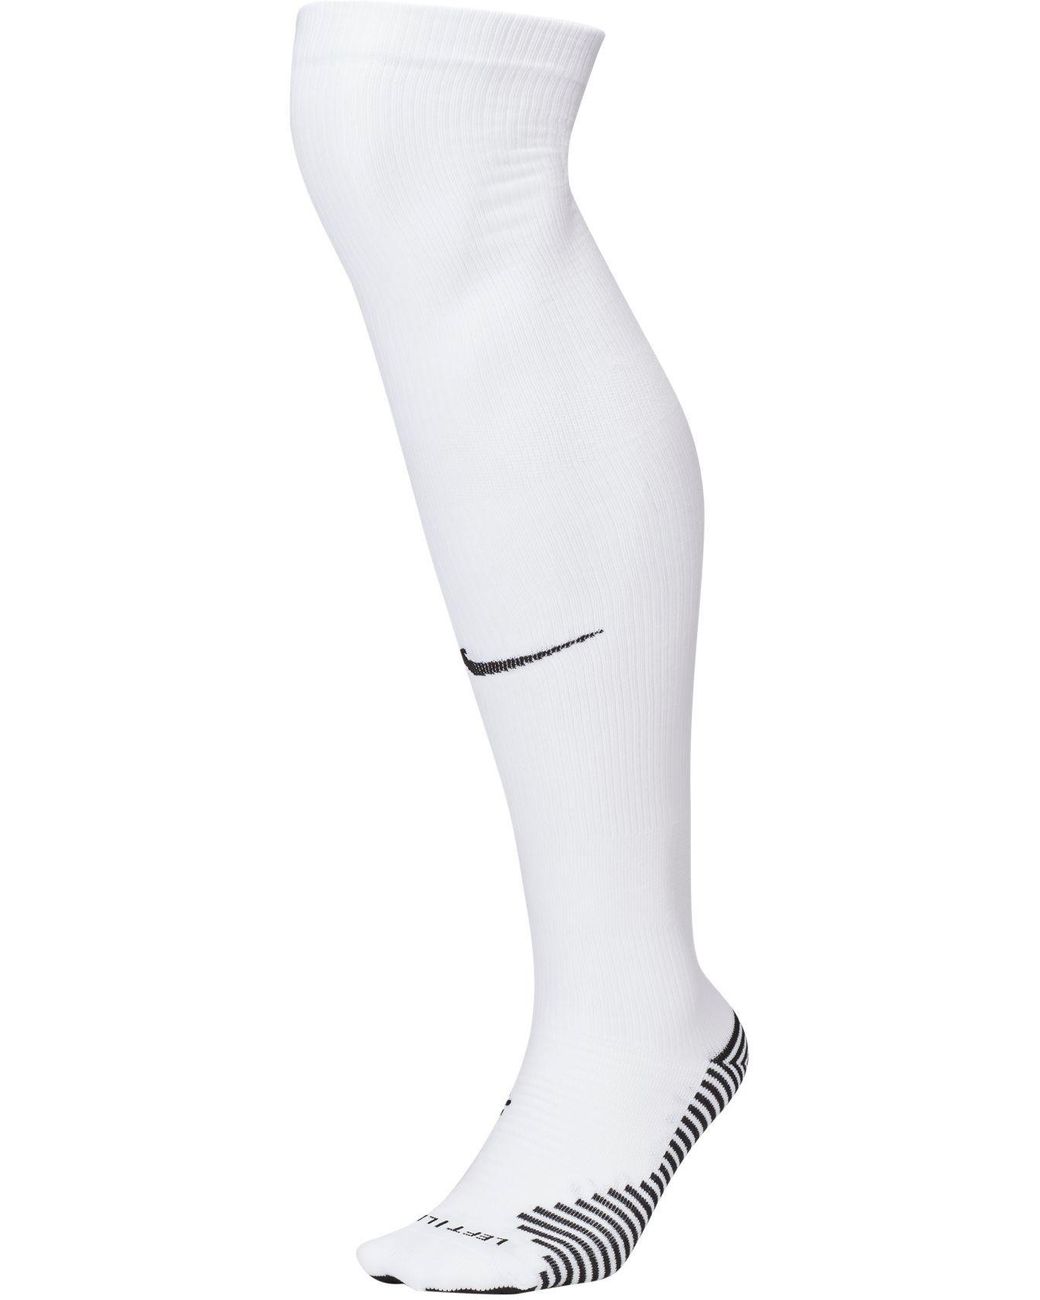 Nike Squad Soccer Knee-high Socks in White/Black (White) - Lyst